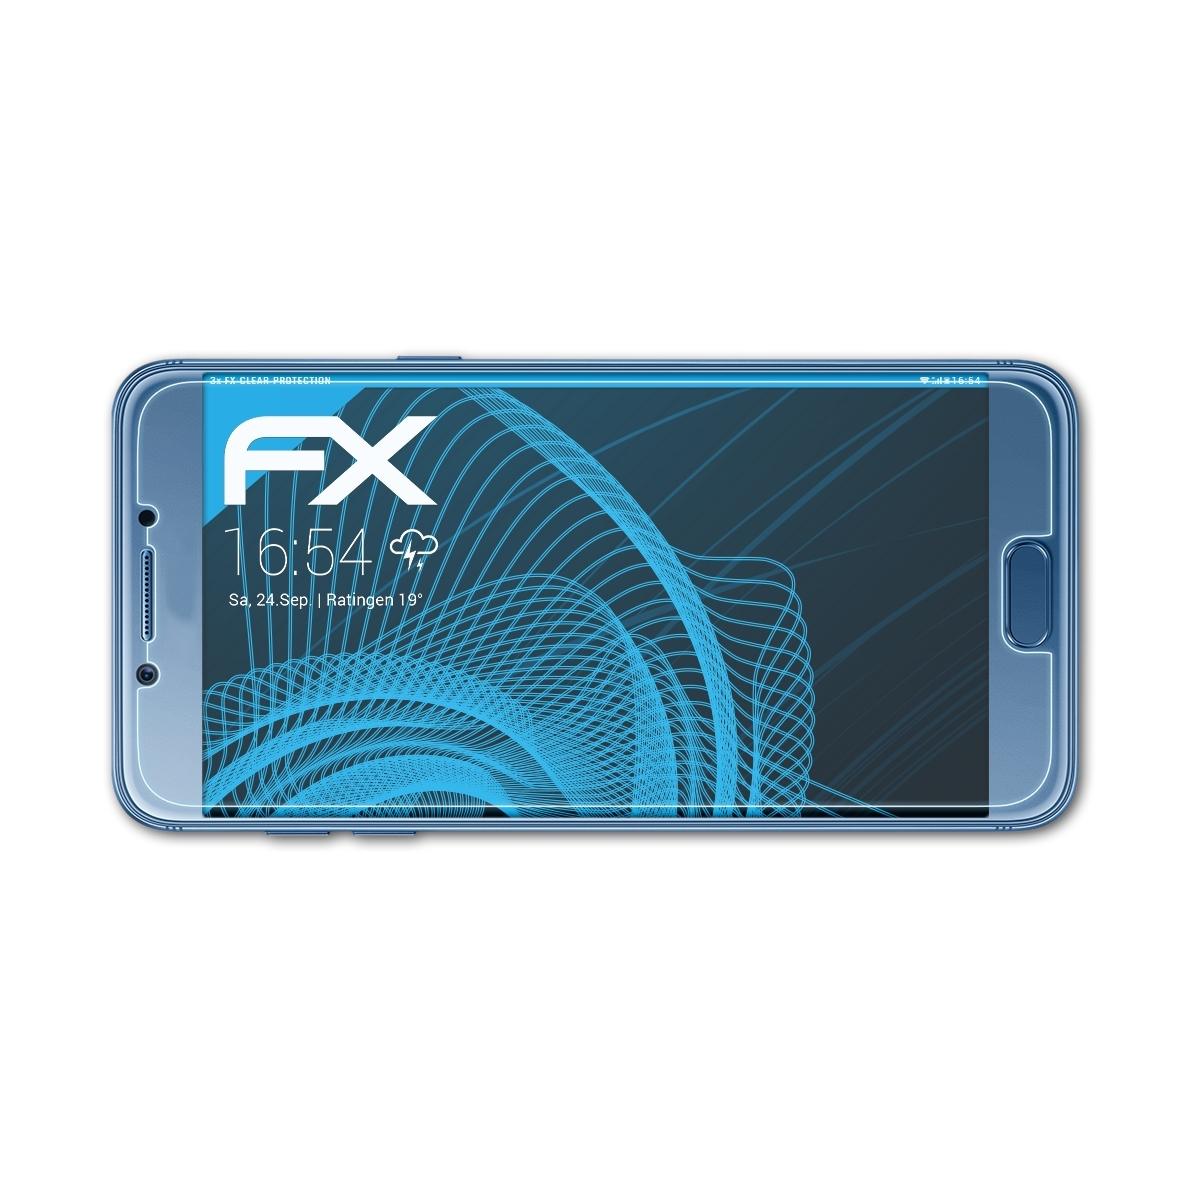 Galaxy Pro C5 Samsung FX-Clear 3x (SM-C5010)) Displayschutz(für ATFOLIX